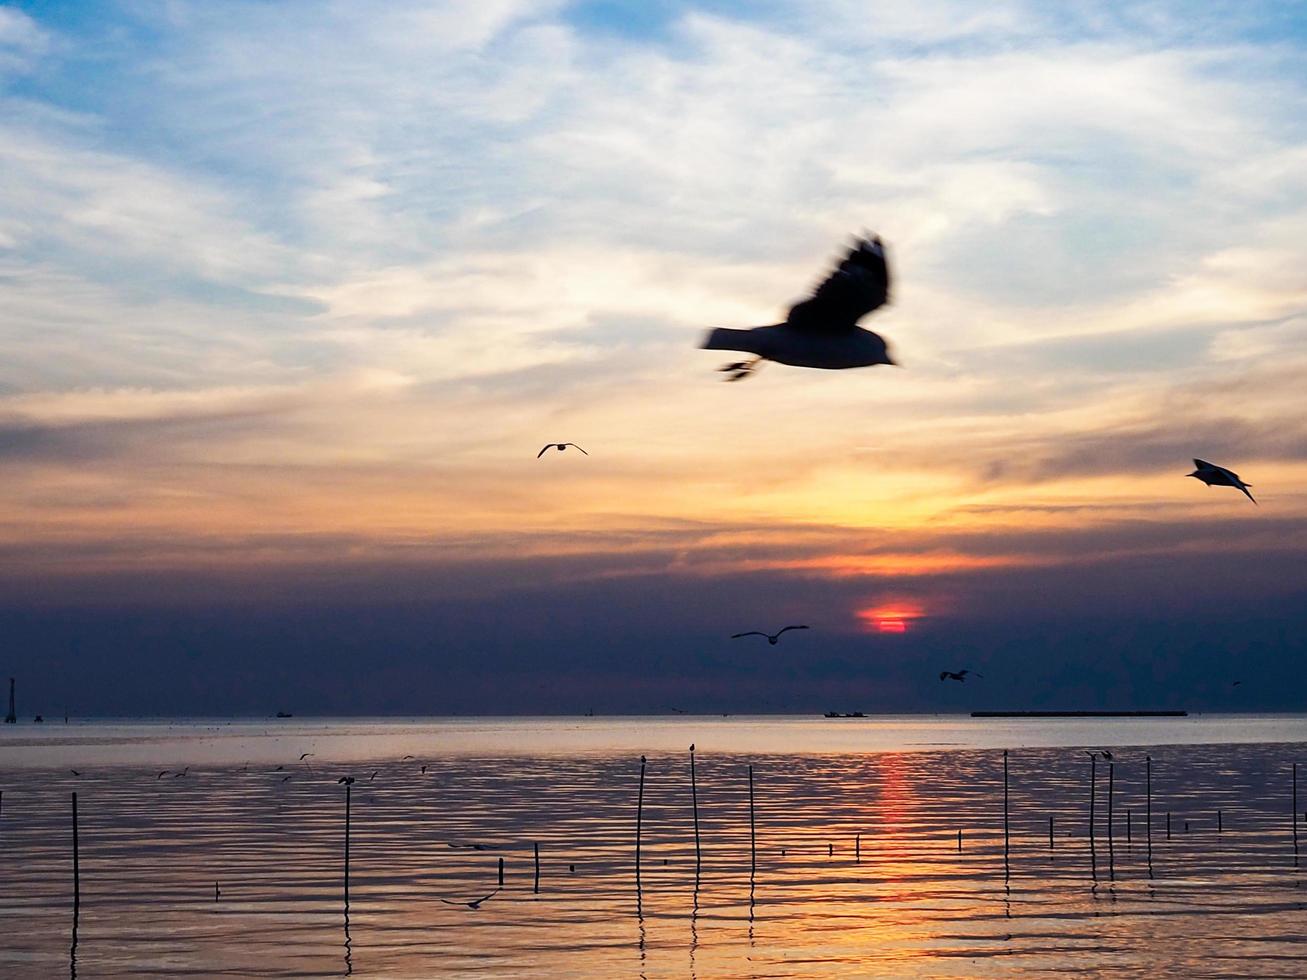 bandada de pájaros vuela sobre la superficie del mar. pájaro volando de regreso a anidar en el mar natural y el fondo del cielo dorado durante la hermosa puesta de sol. foto